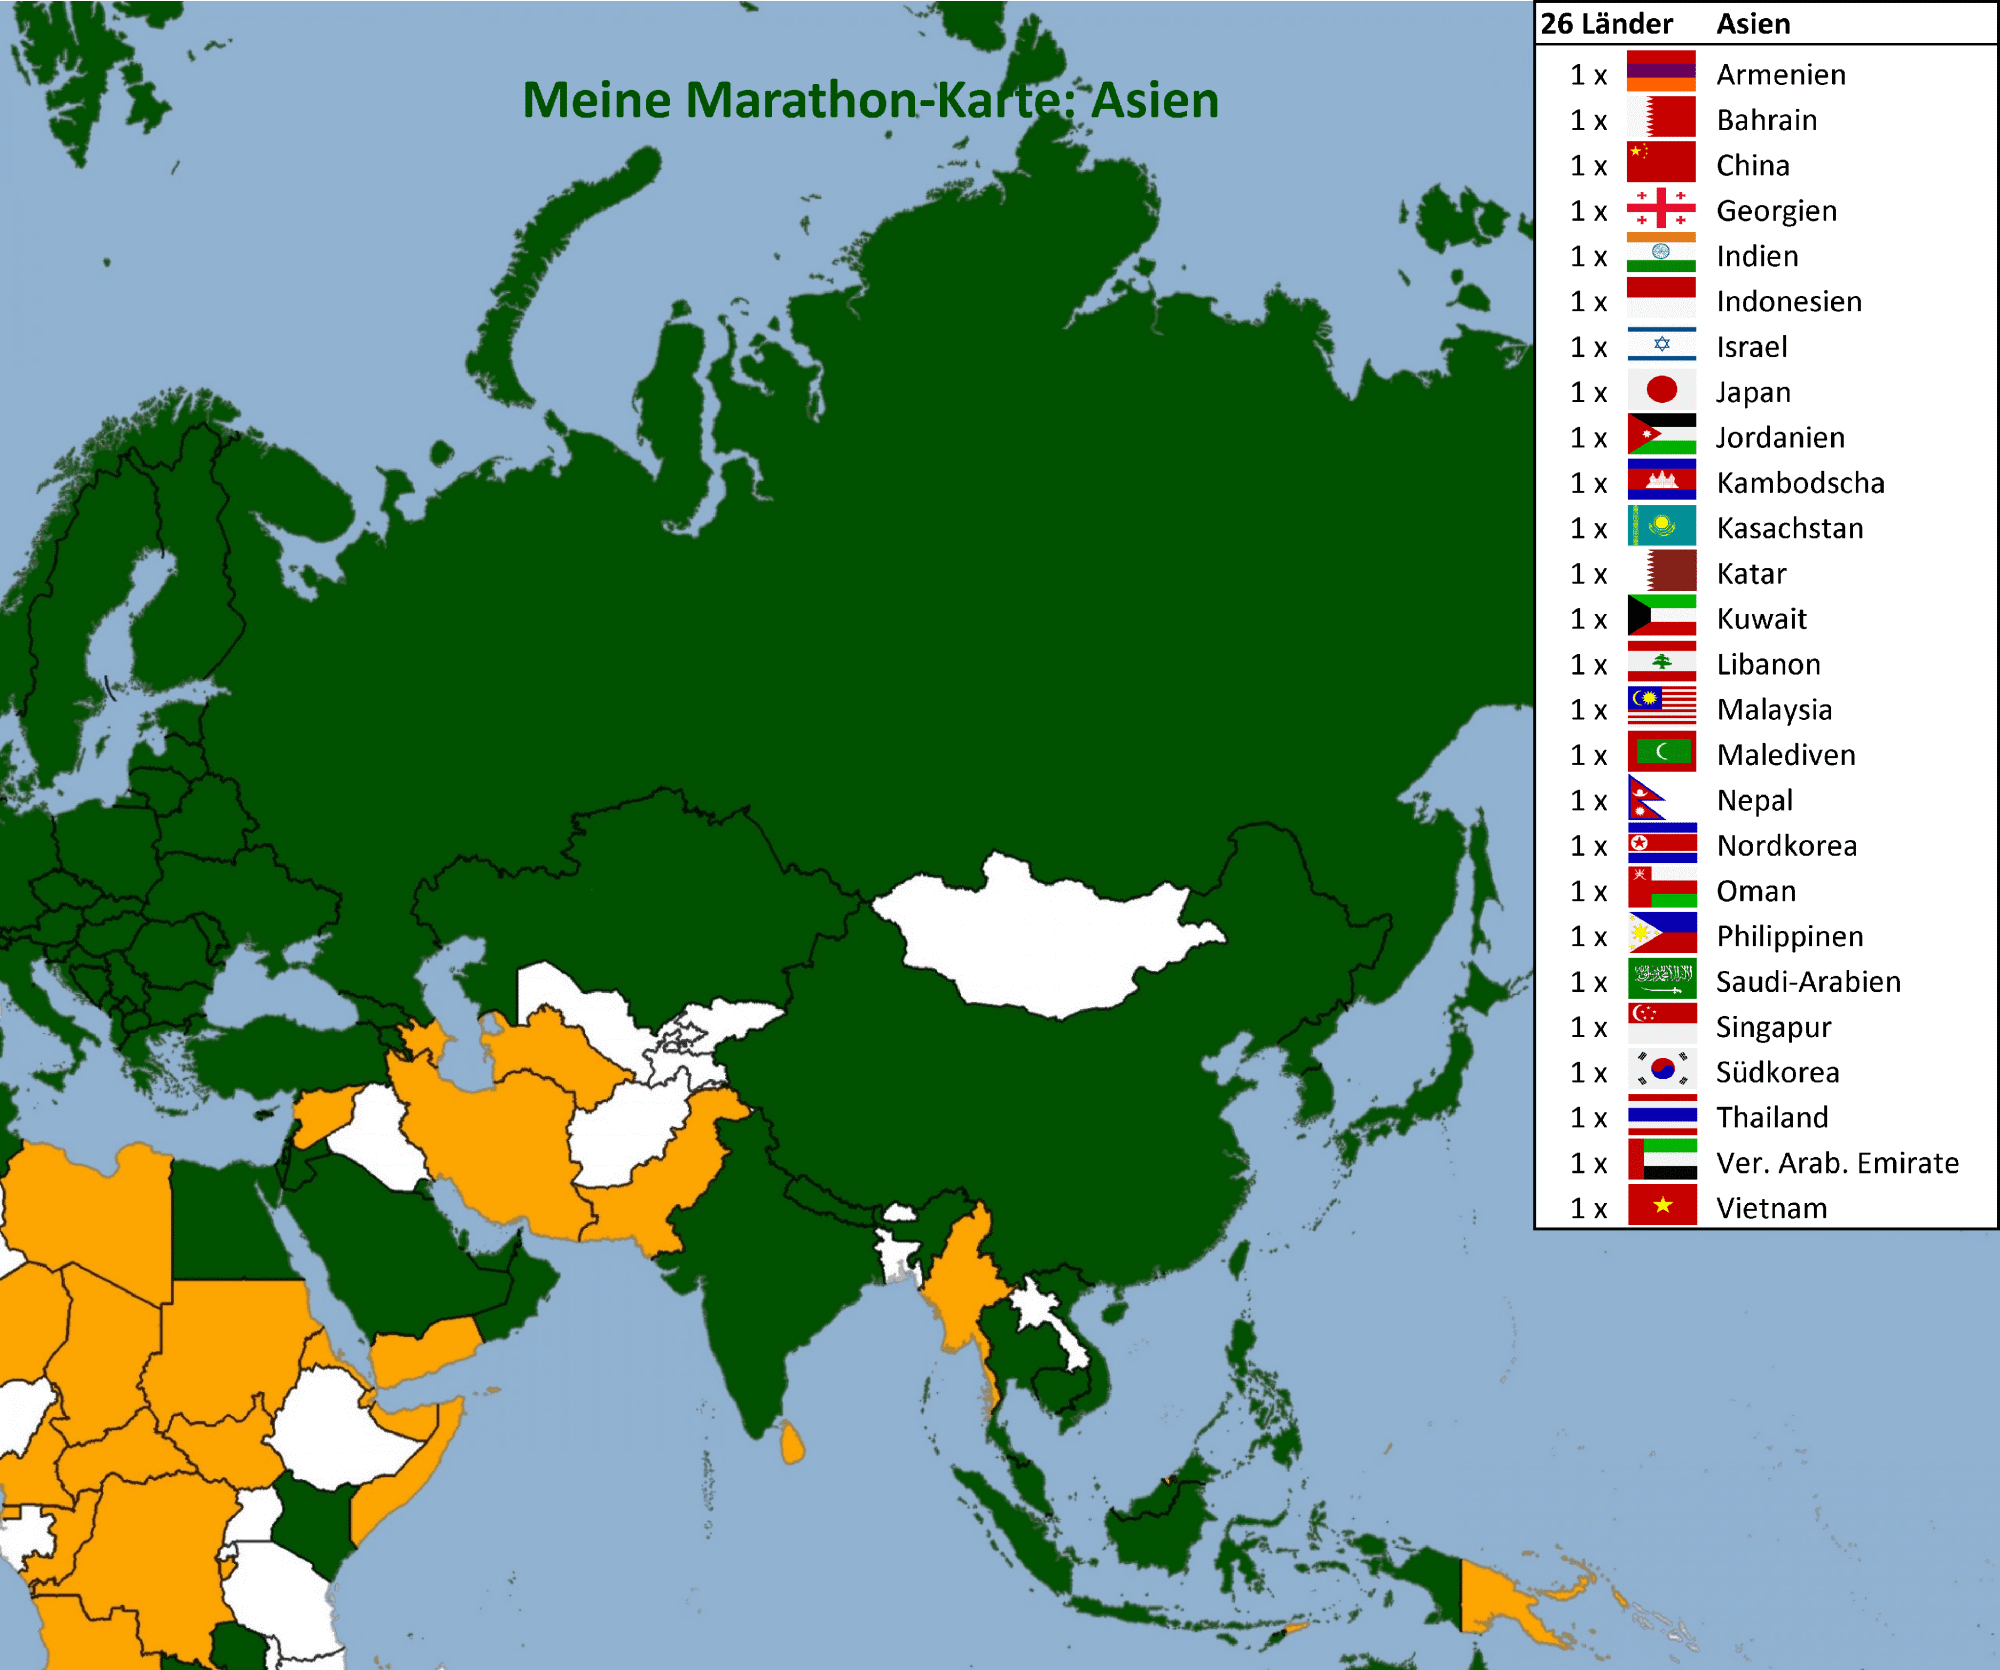 Meine Marathon-Karte: Asien